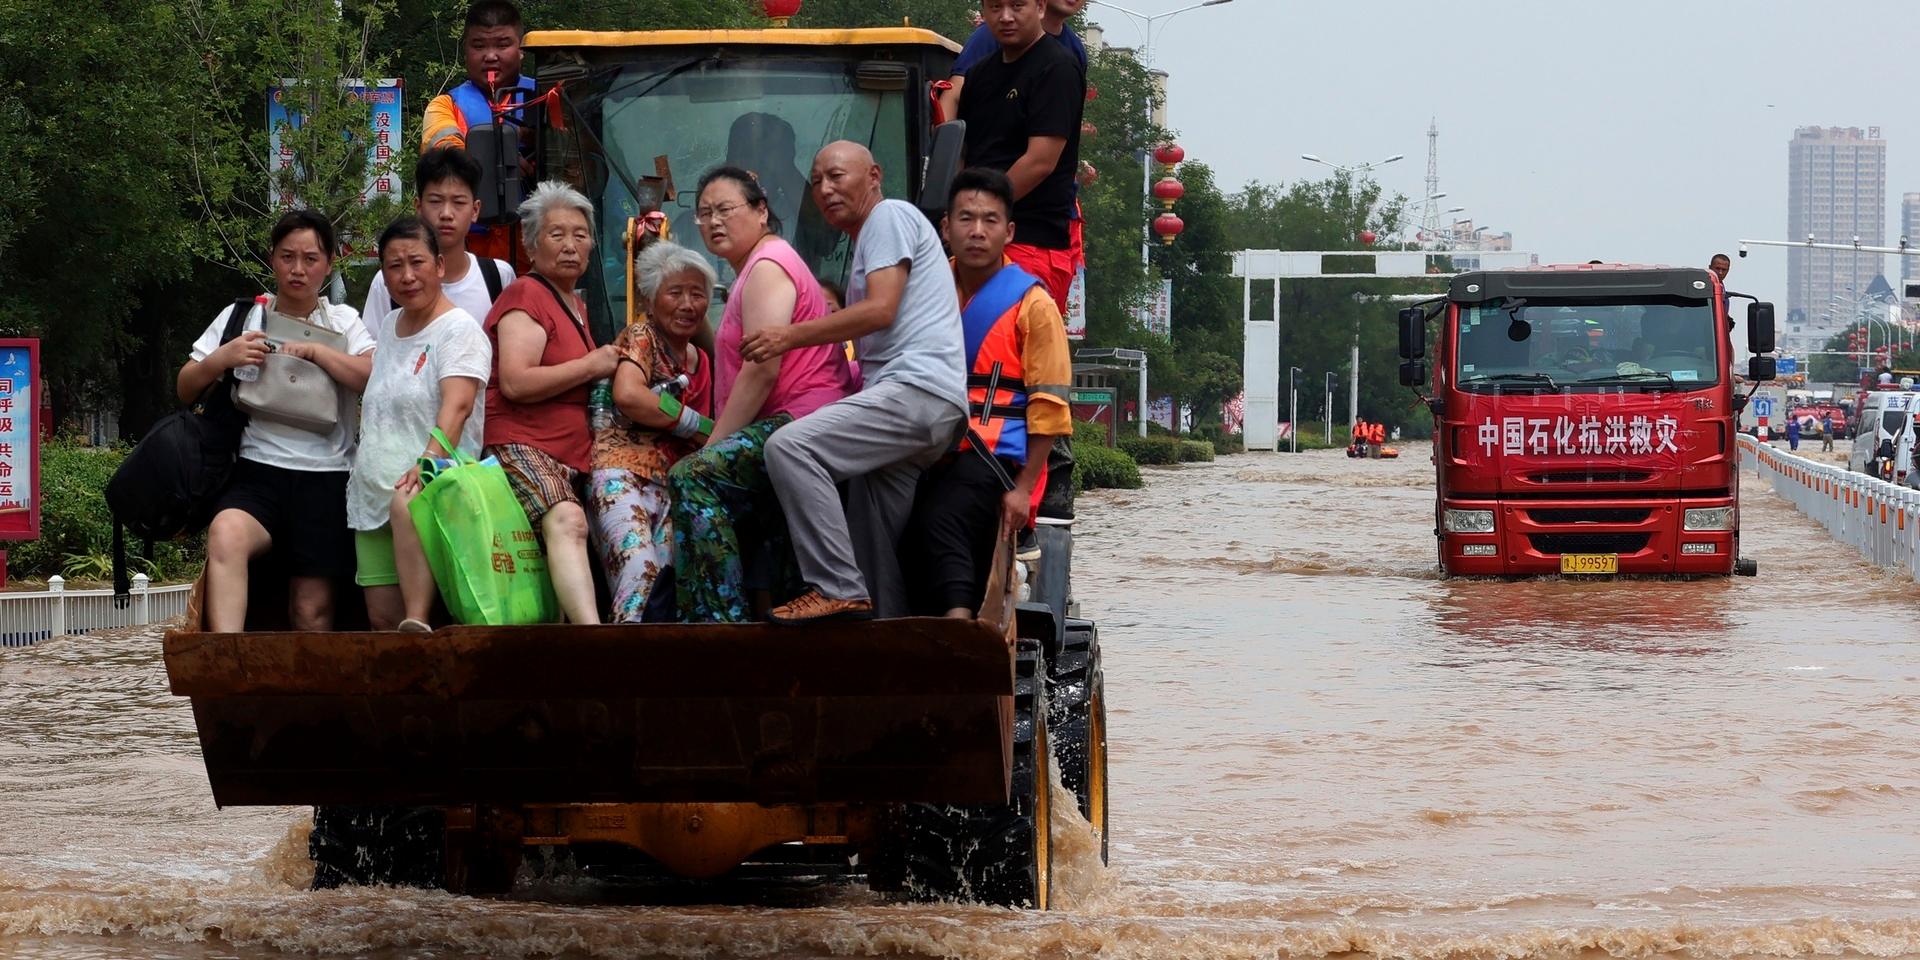 Människor räddas undan översvämningarna i Henan i Kina.